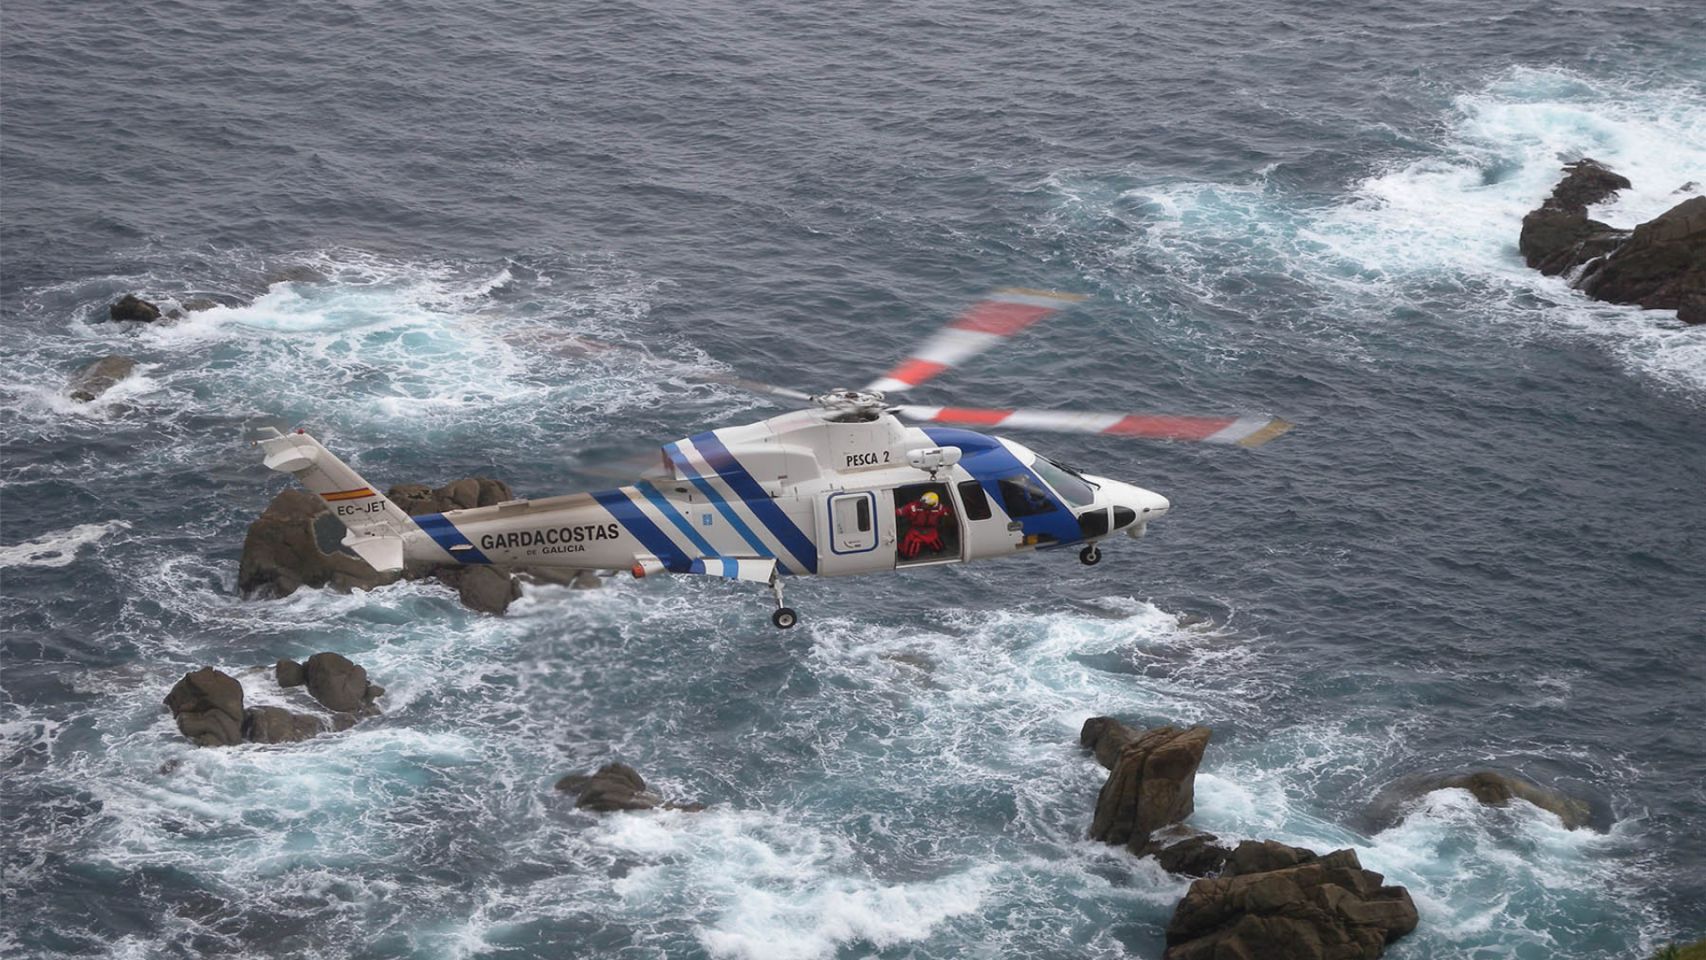 Helicóptero "Pesca 2" de los Gardacostas.